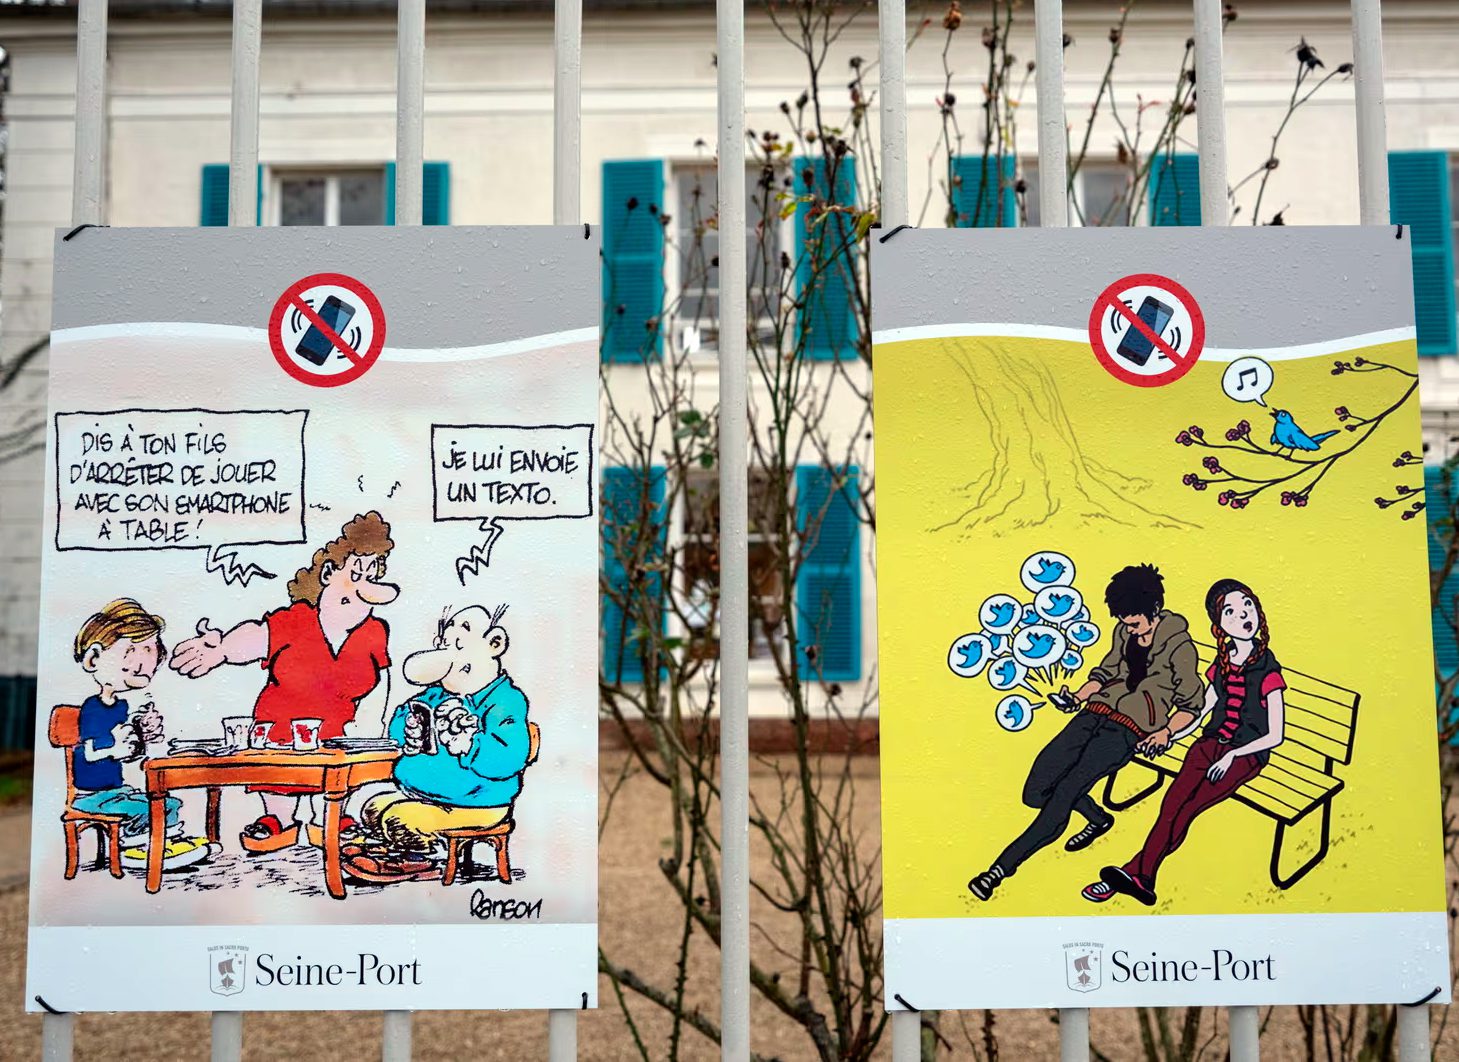 Французская коммуна Сен-Пор (Seine-Port) с населением менее двух тысяч человек проголосовала в минувшие выходные за запрет использования смартфонов в общественных местах, сообщают в субботу СМИ. Взрослым и детям нельзя больше просматривать свои мобил...